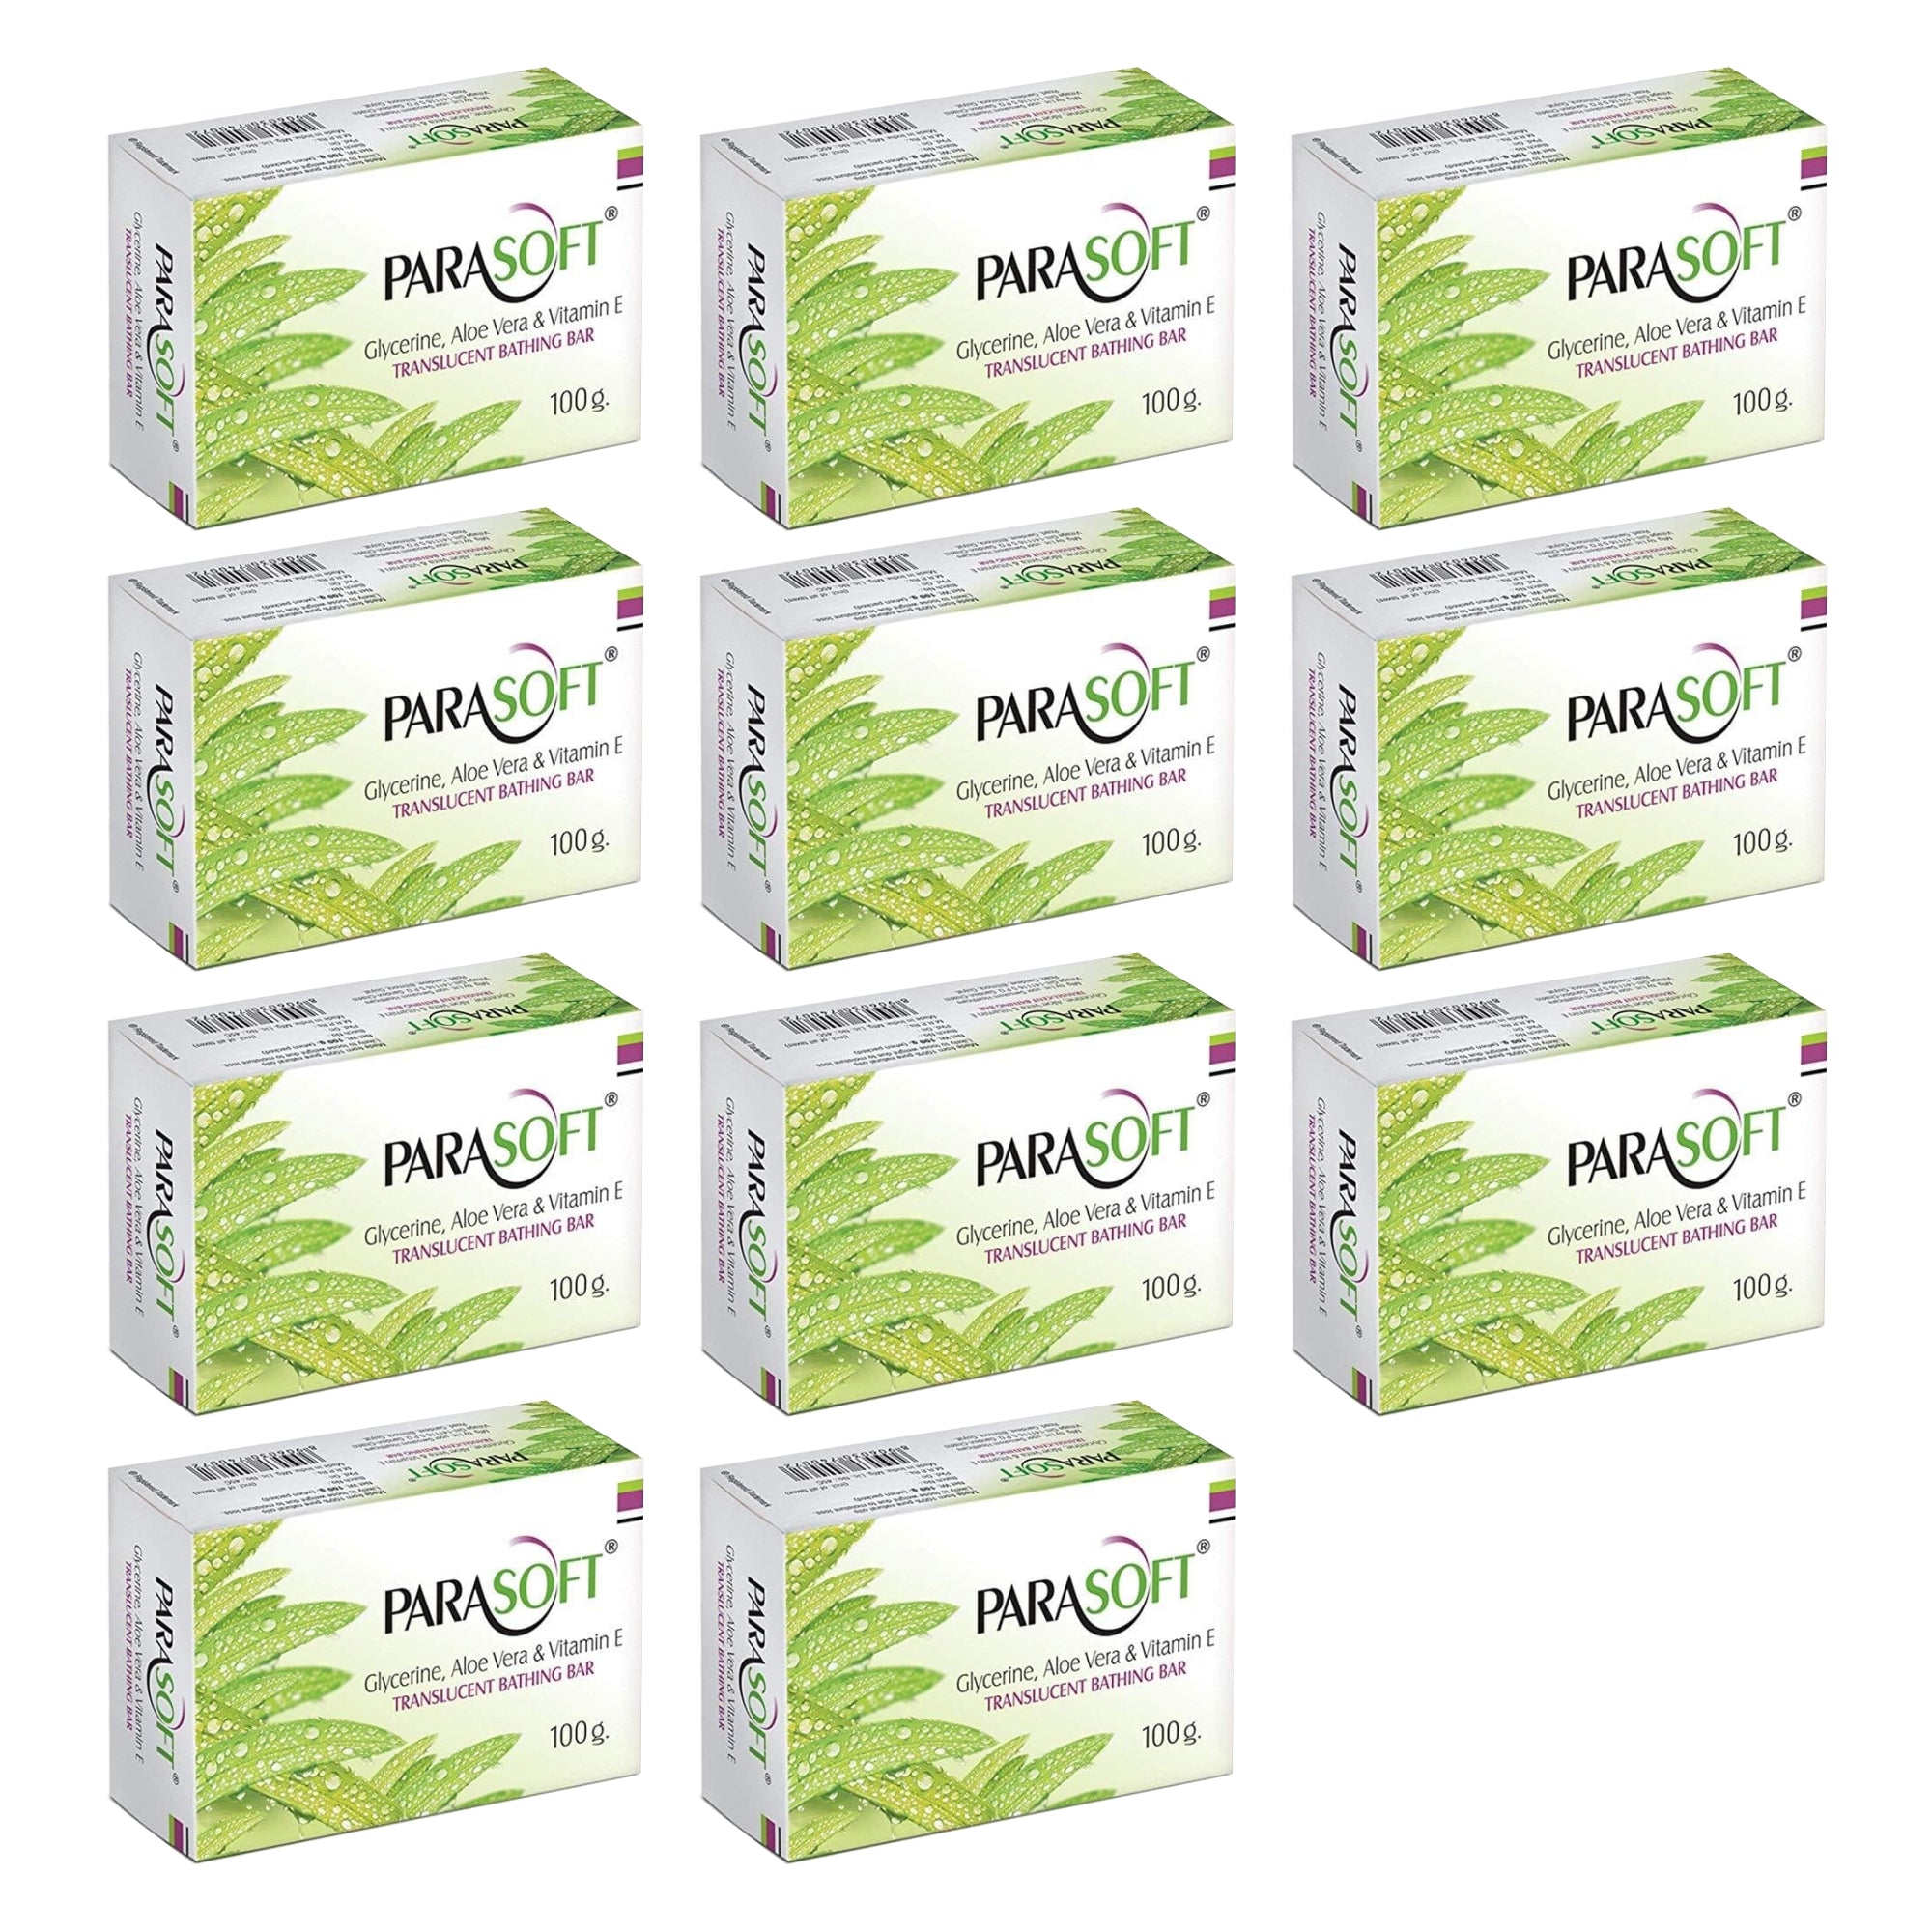 Shoprythm Dry,Parasoft Pack of 11 Salve Parasoft Soap 100g